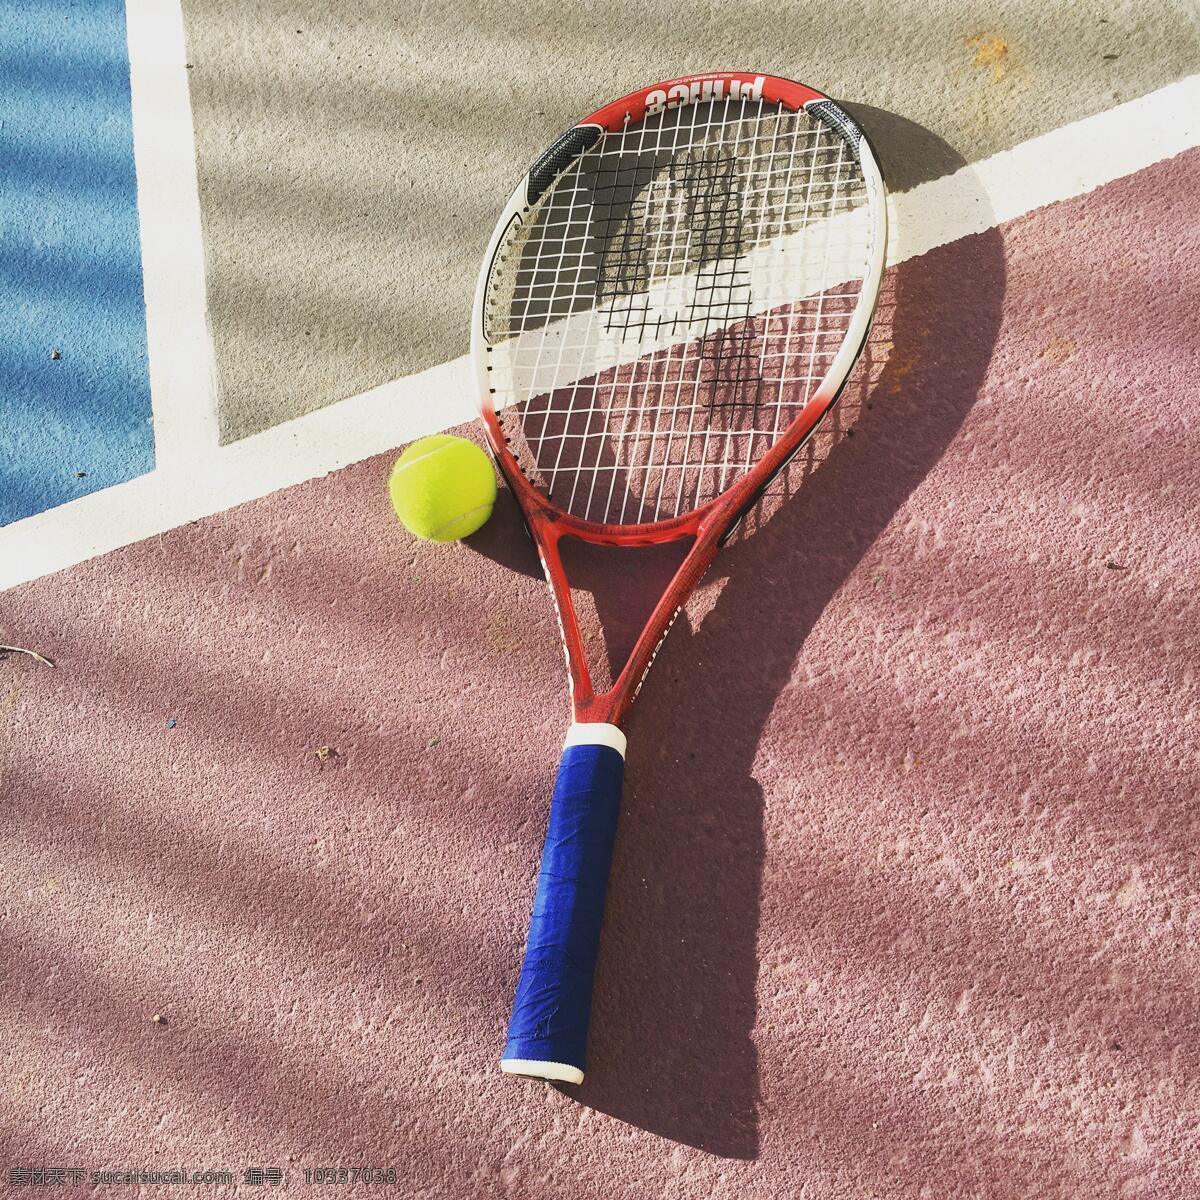 网球拍 球 球拍 游戏 娱乐 体育 体育竞技 运动 竞赛 打网球 网球场 网球运动 文化艺术 体育运动